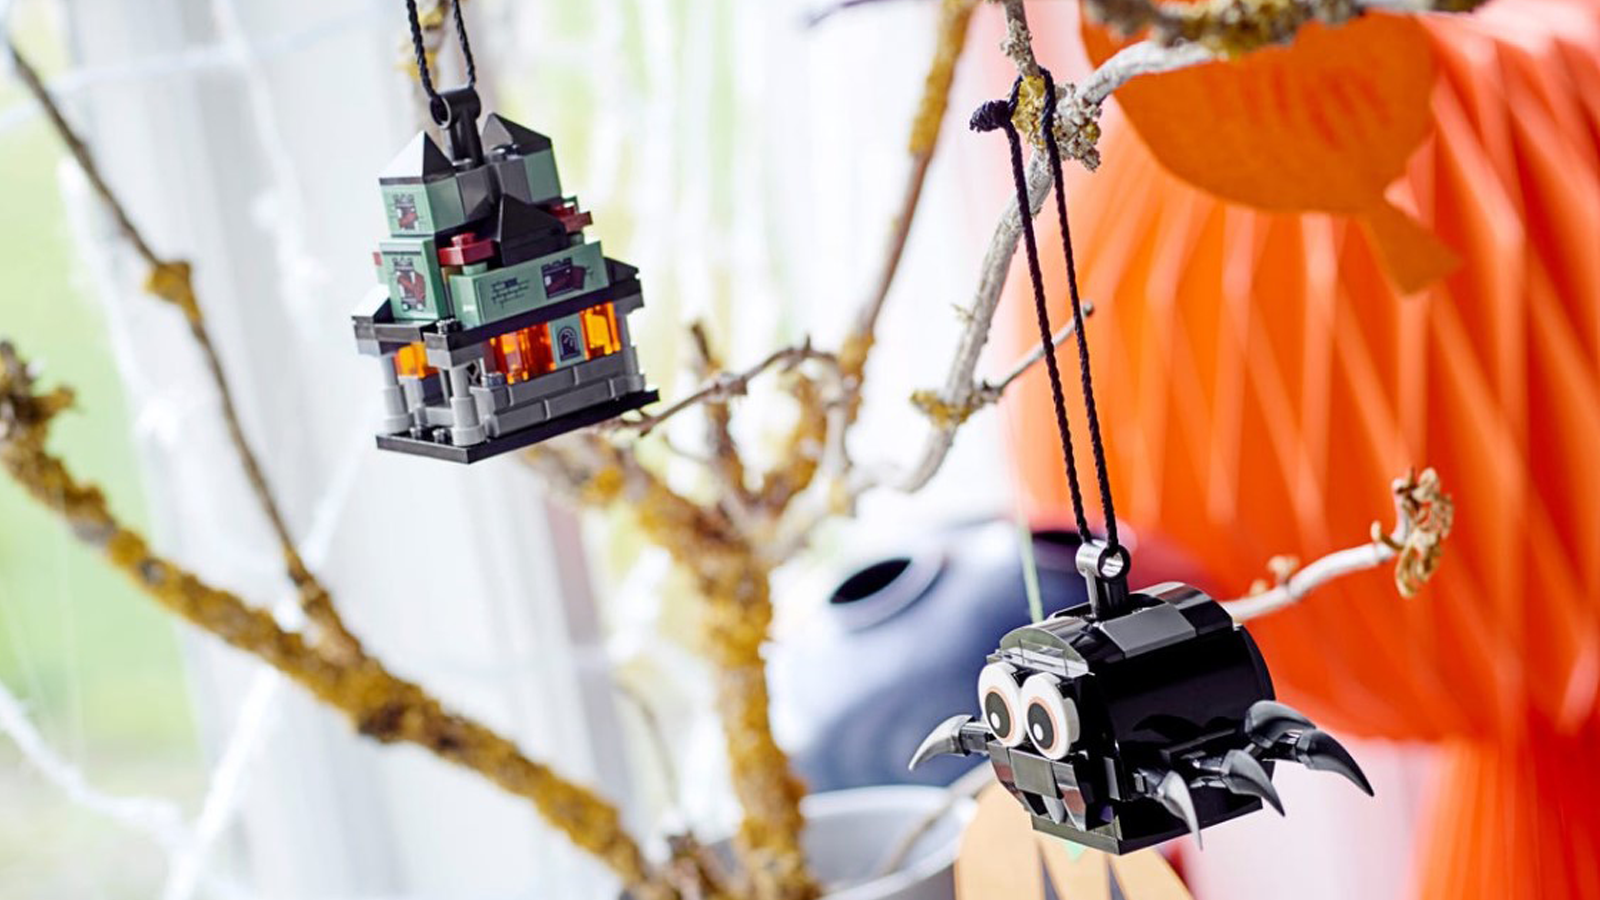 LEGO Spider & Haunted House Pack hangend aan boom met ander seizoensdecor